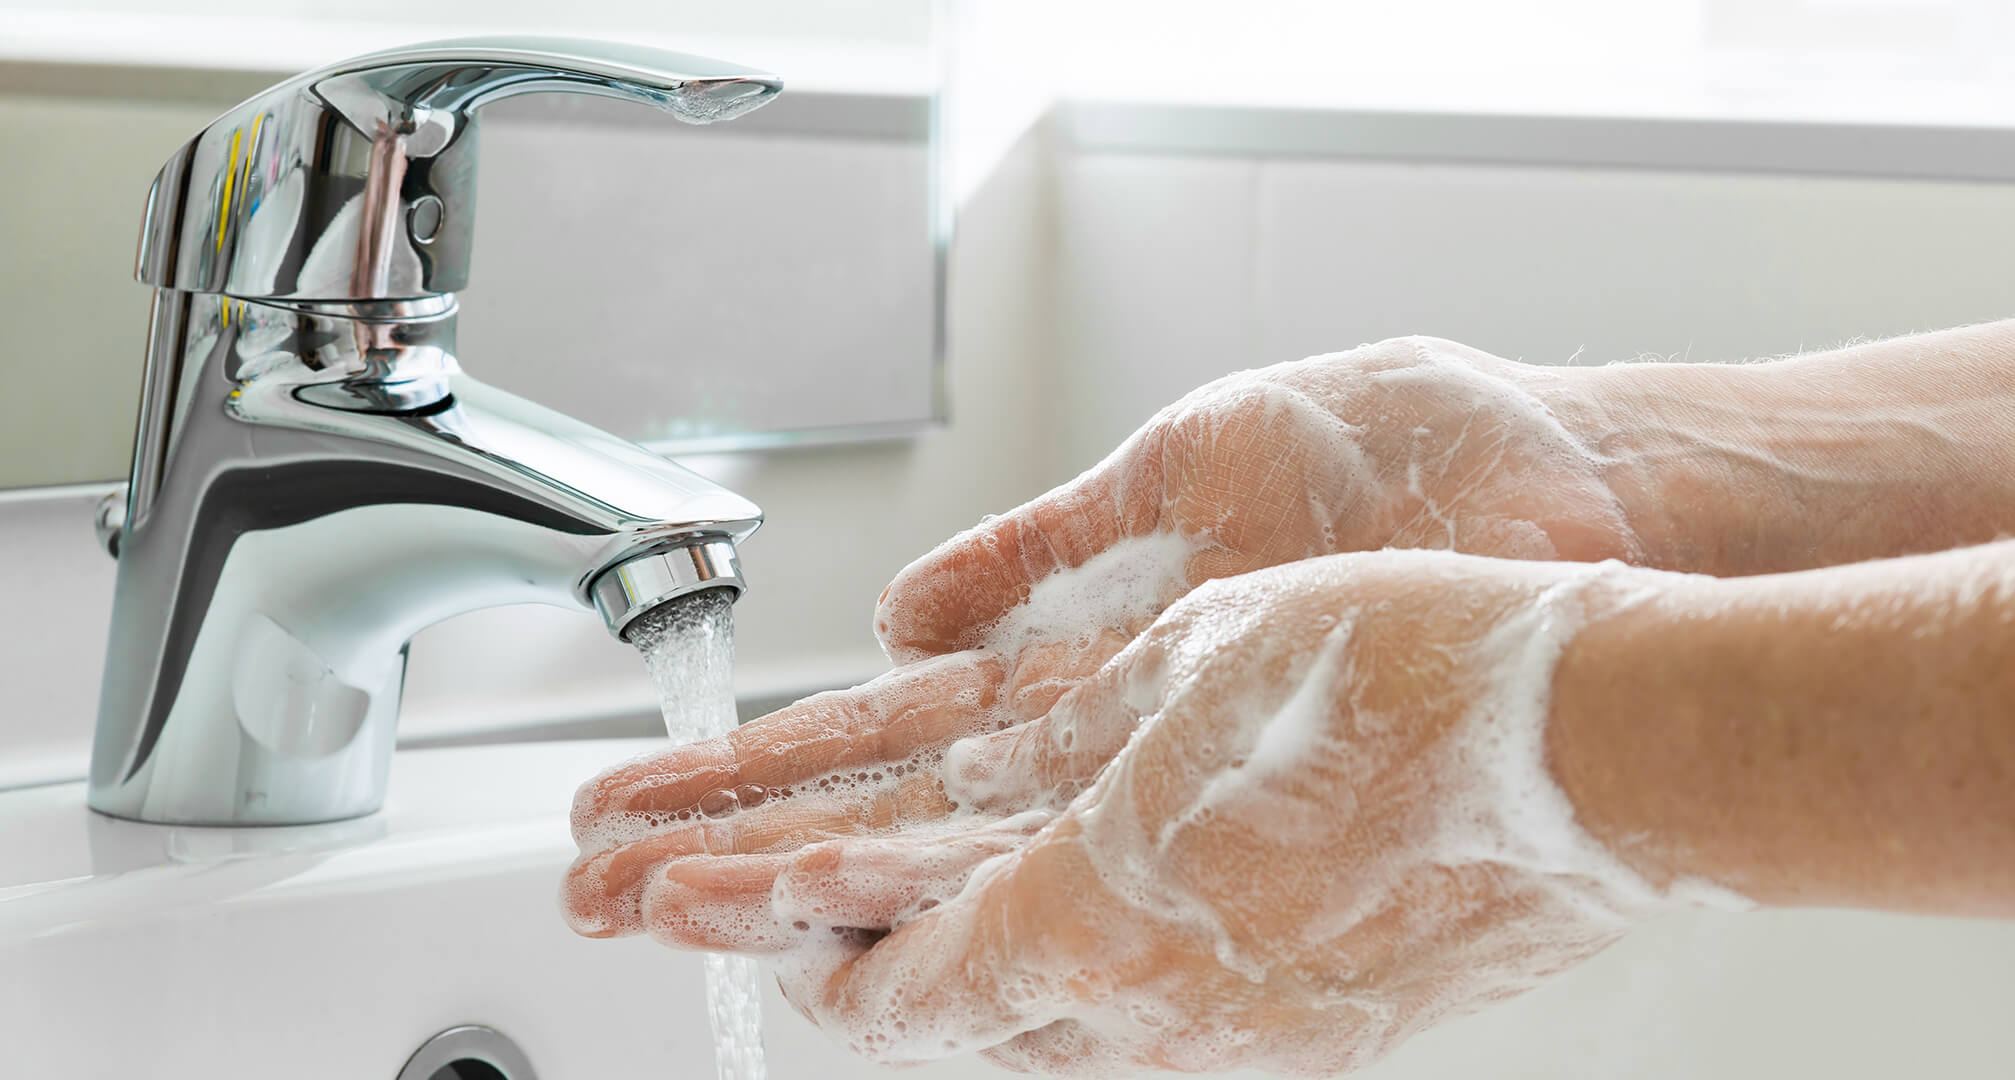 πλύσιμο χεριών με σαπούνι στη βρύση του νεροχύτη